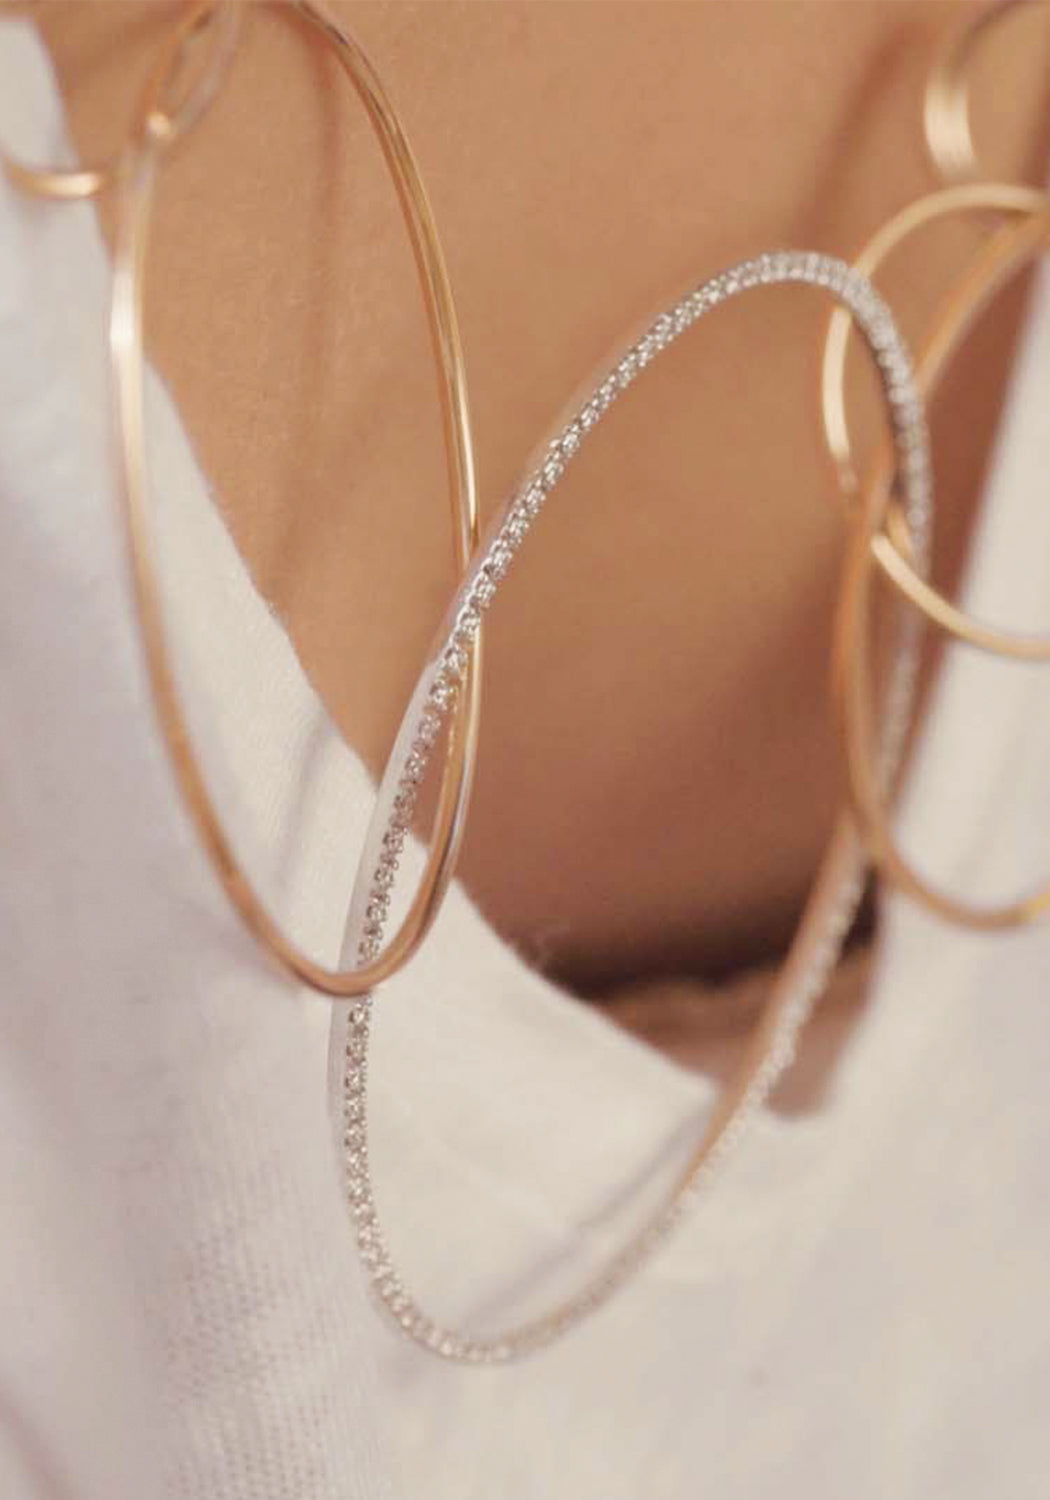 K di Kuore 18K Rose & White Gold Diamond Circles Necklace | OsterJewelers.com